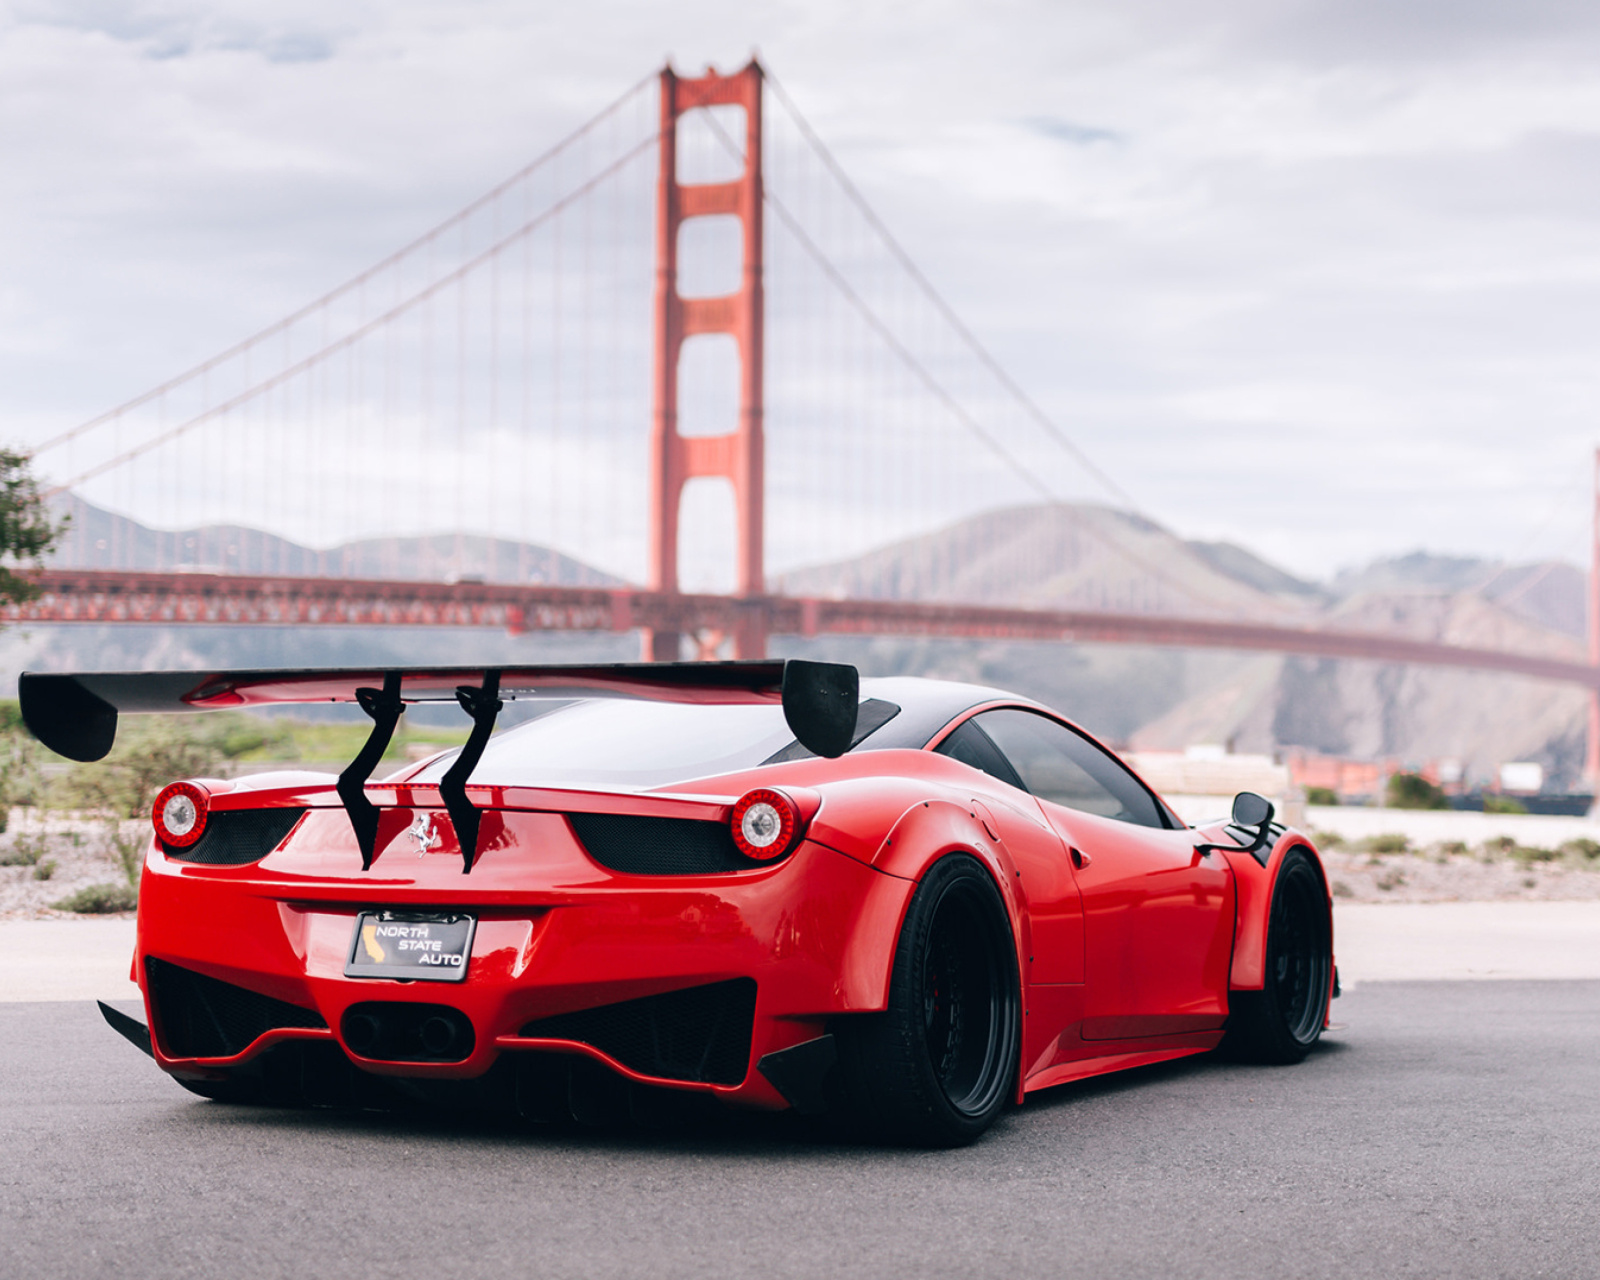 Ferrari 458 Italia near Golden Gate Bridge wallpaper 1600x1280